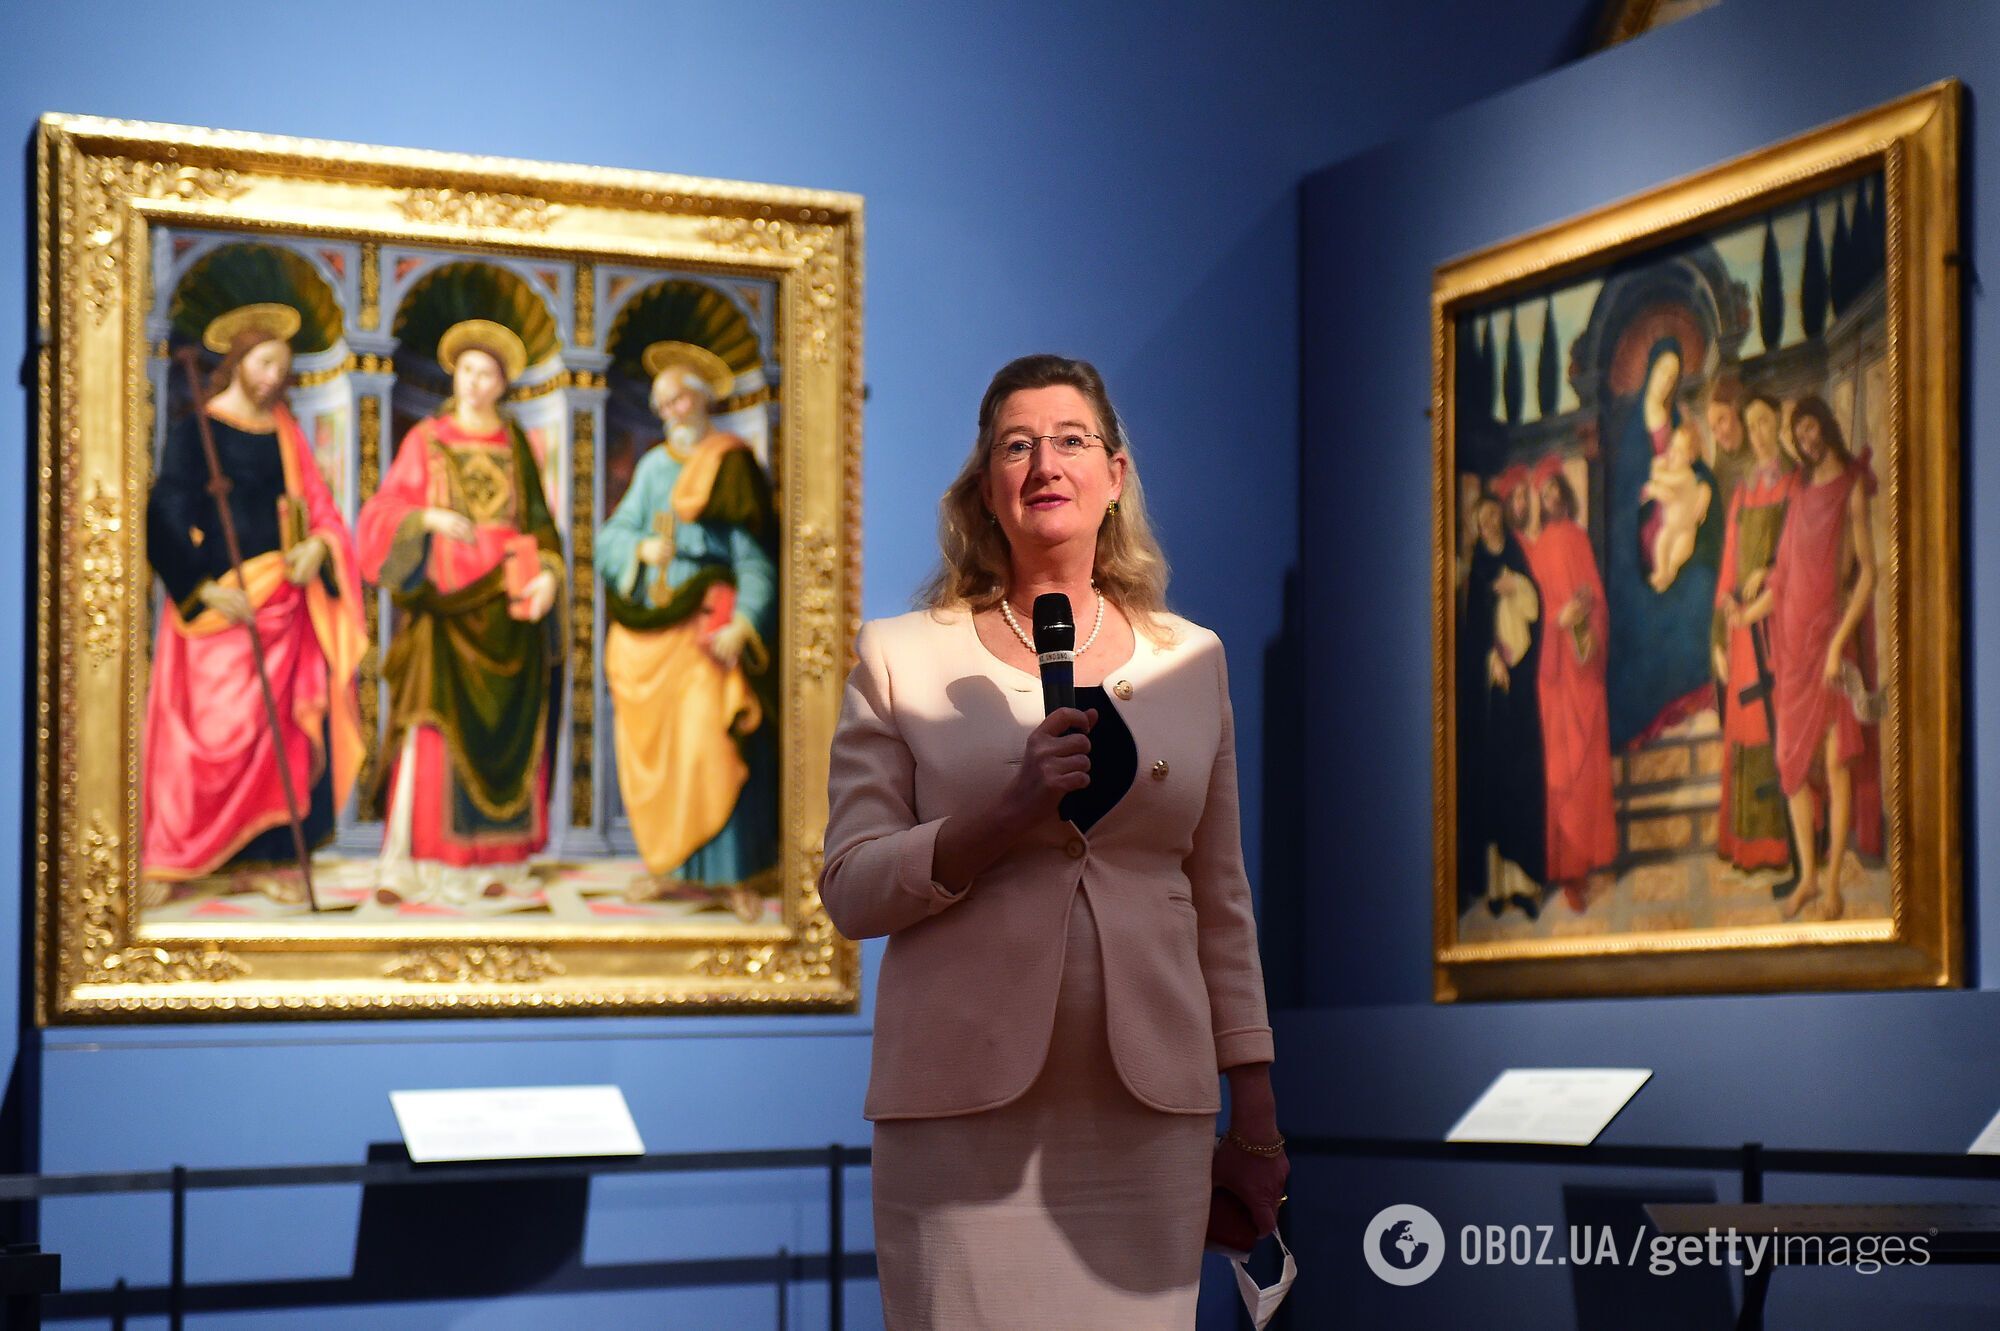 "Туристы превратили Флоренцию в проститутку": директор итальянского музея родом из Германии спровоцировала громкий скандал